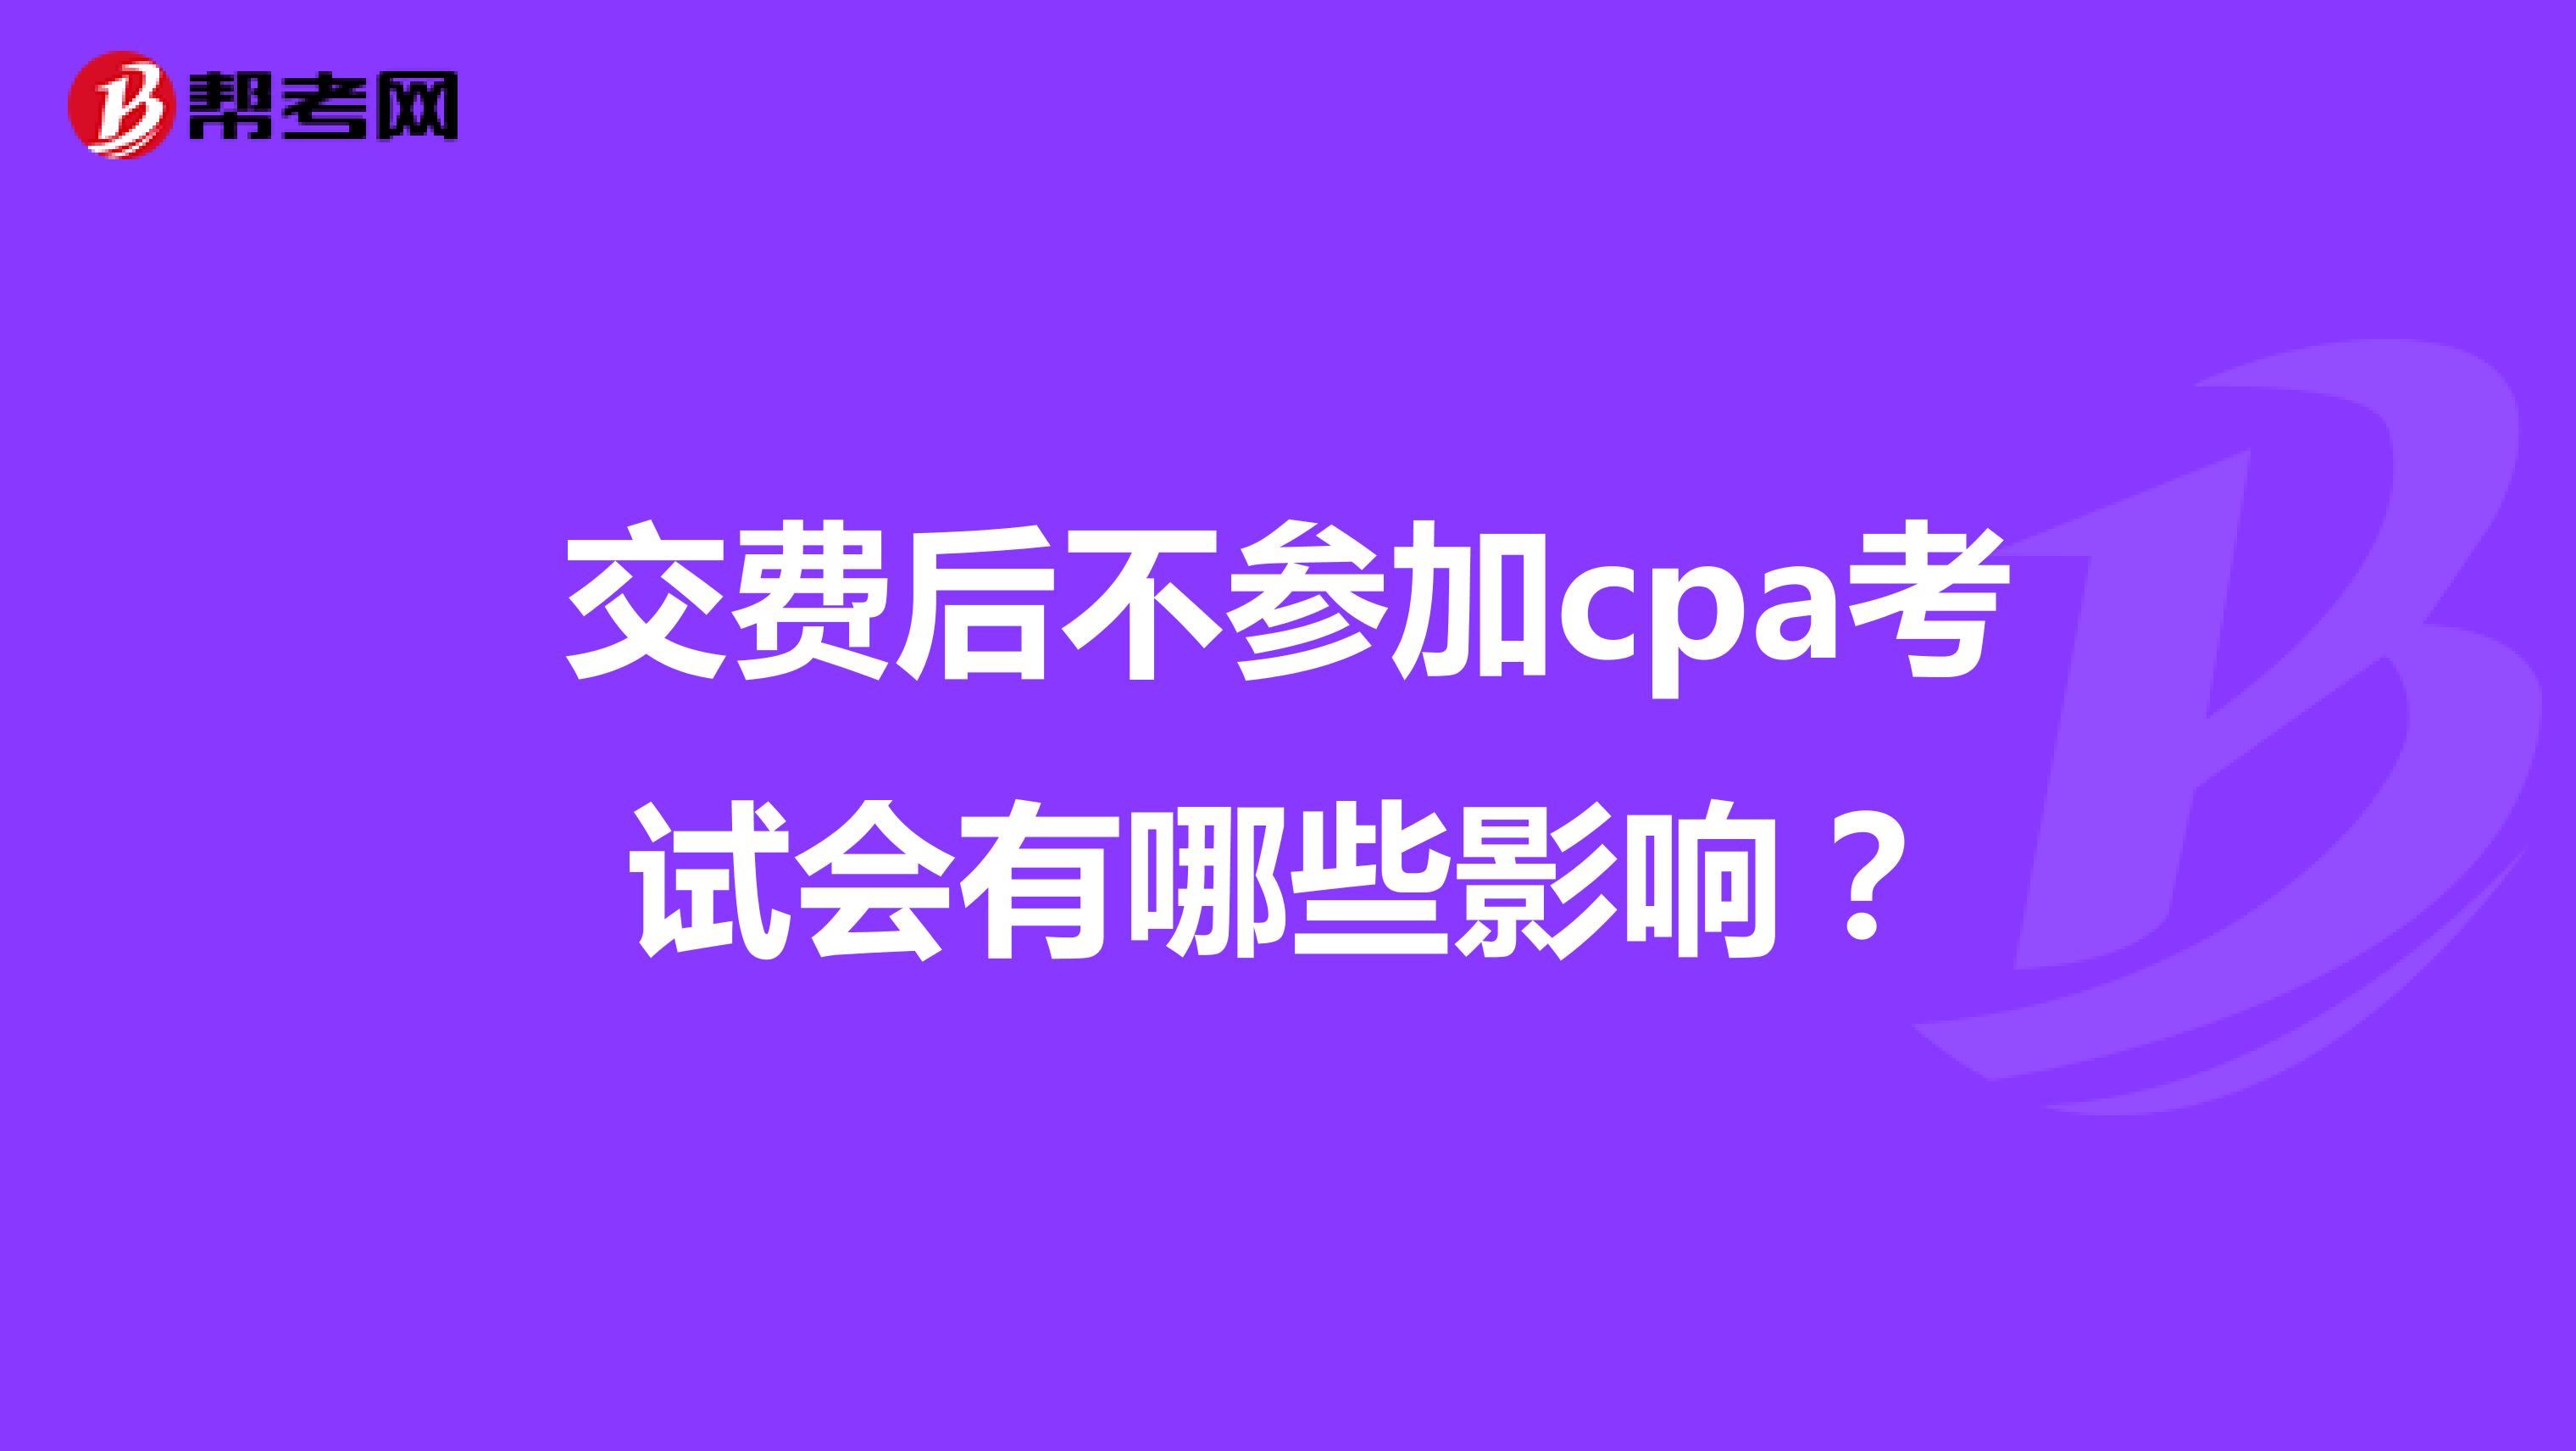 交费后不参加cpa考试会有哪些影响？